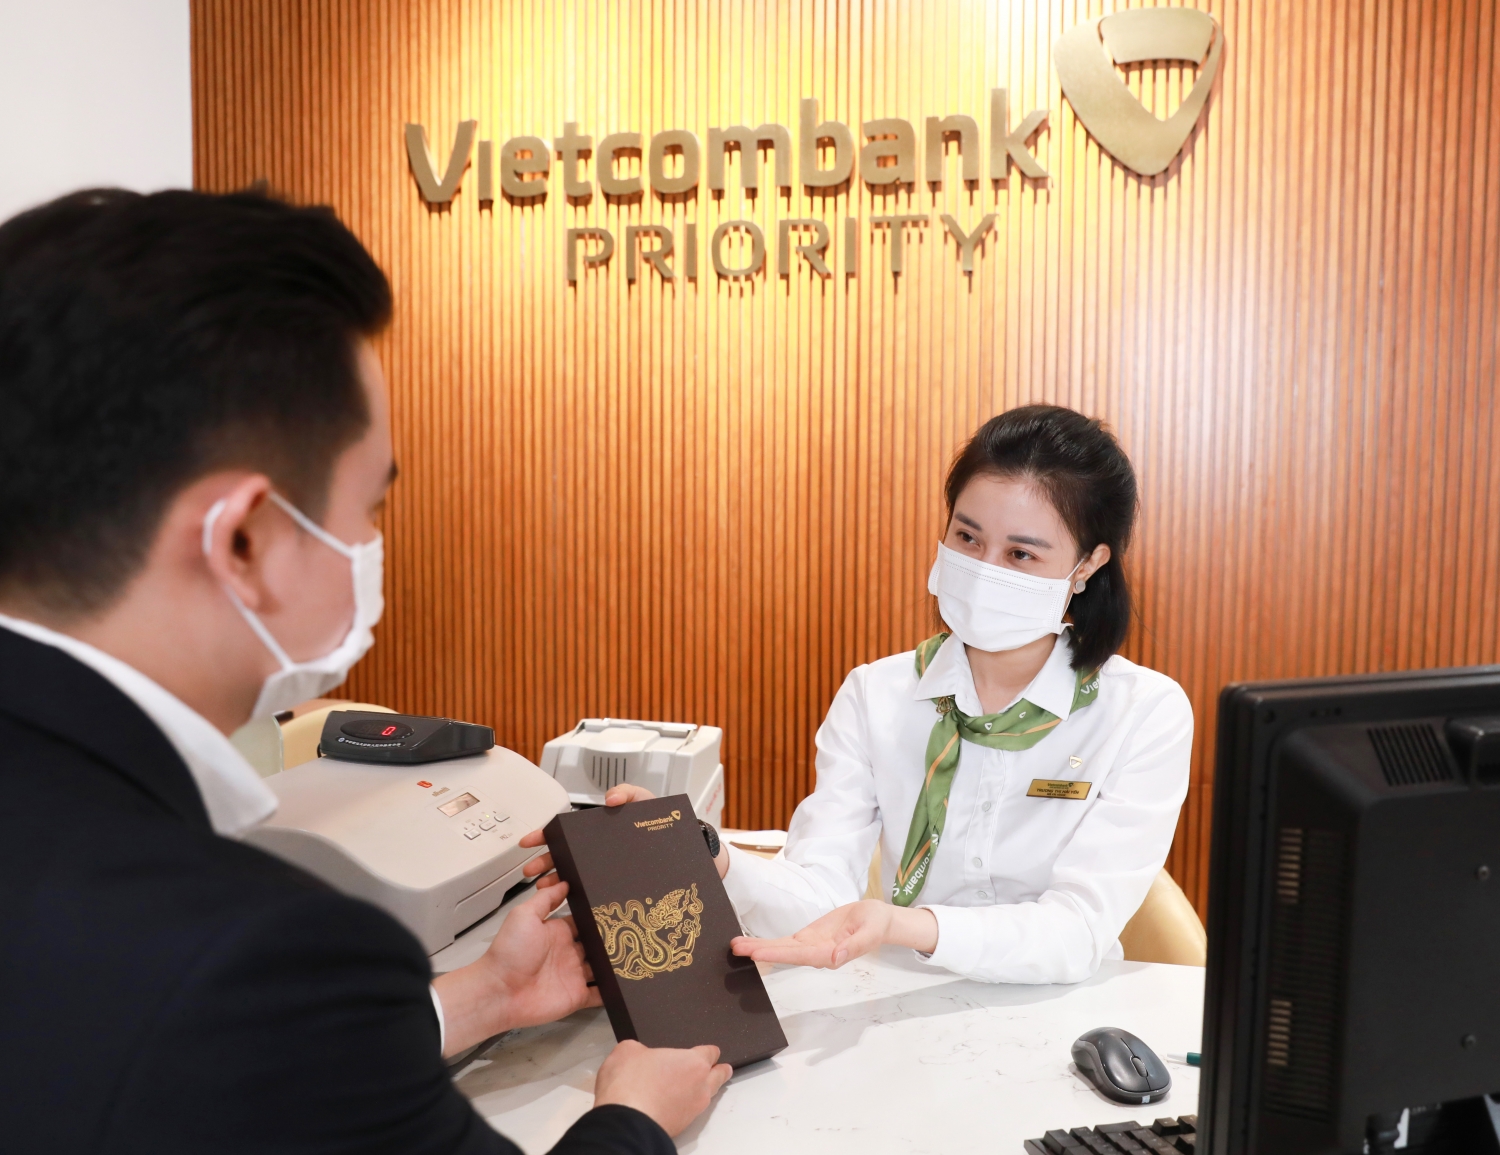 Giải mã: Khách hàng ưu tiên Vietcombank Priority được chăm sóc khác biệt và đẳng cấp như thế nào?